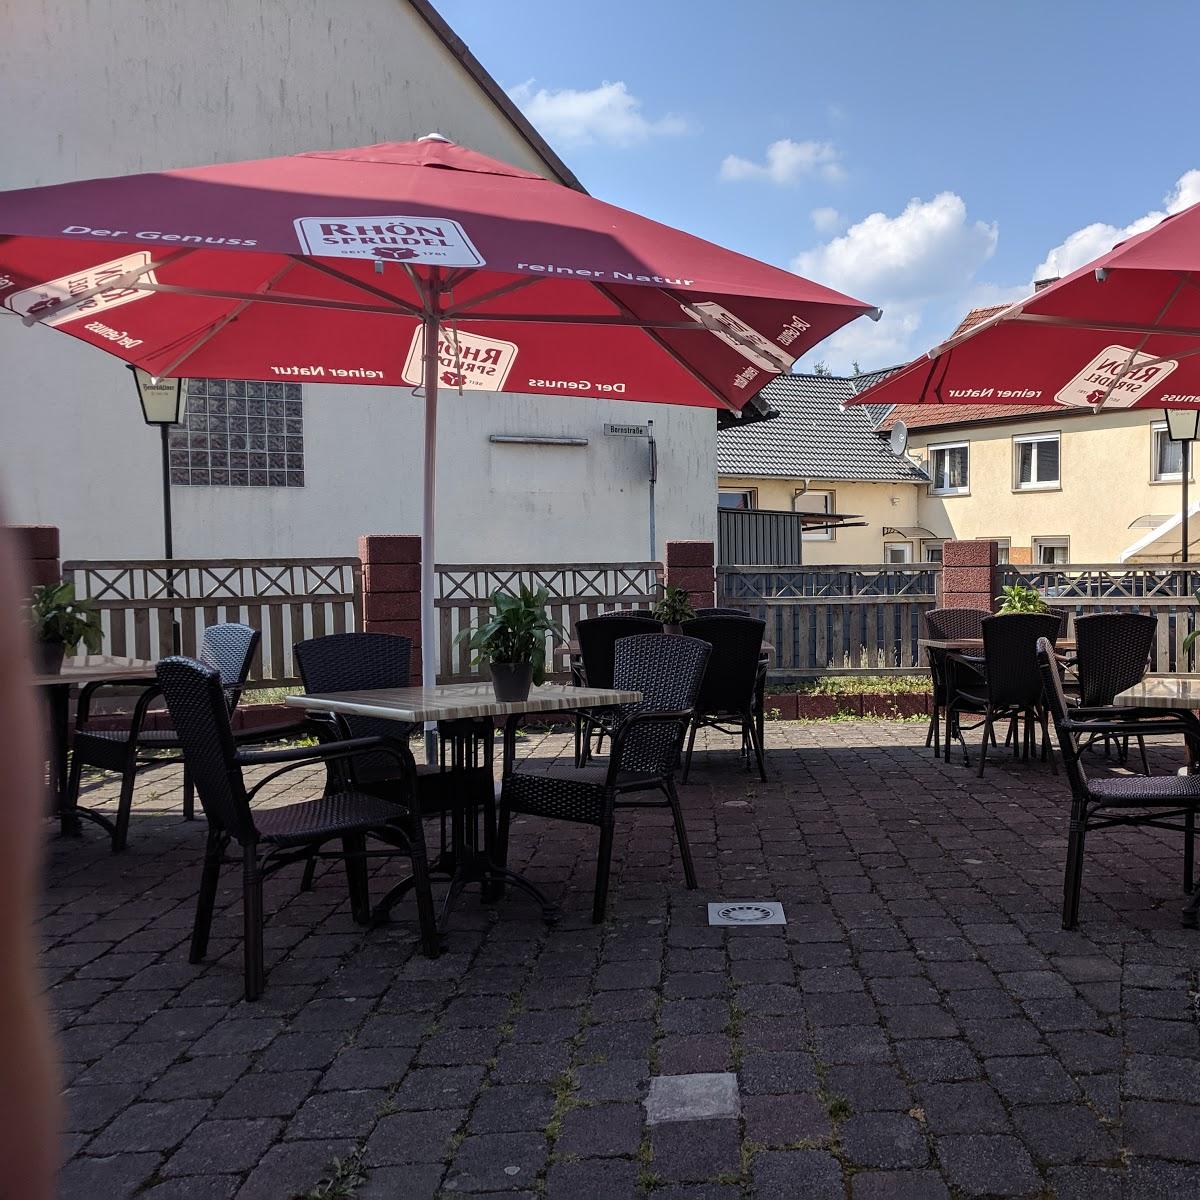 Restaurant "La Strega" in  Eichenzell